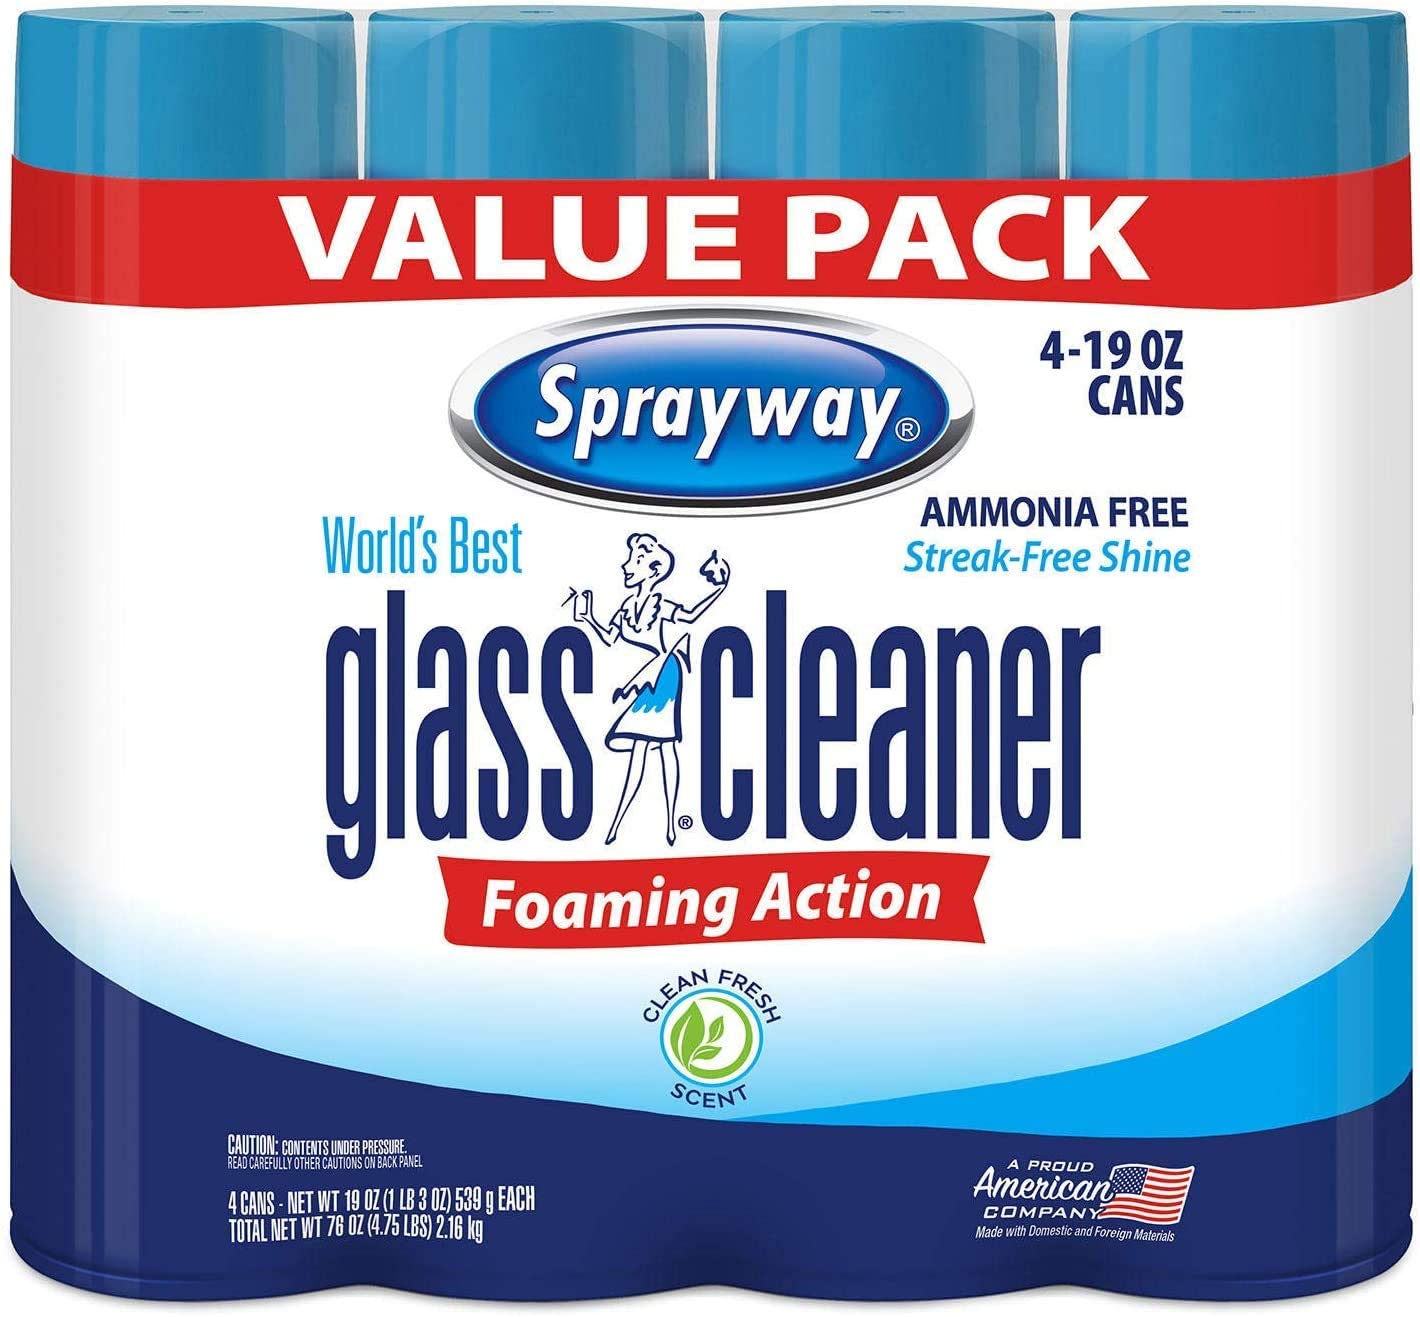 Sprayway World's Best Glass Cleaner